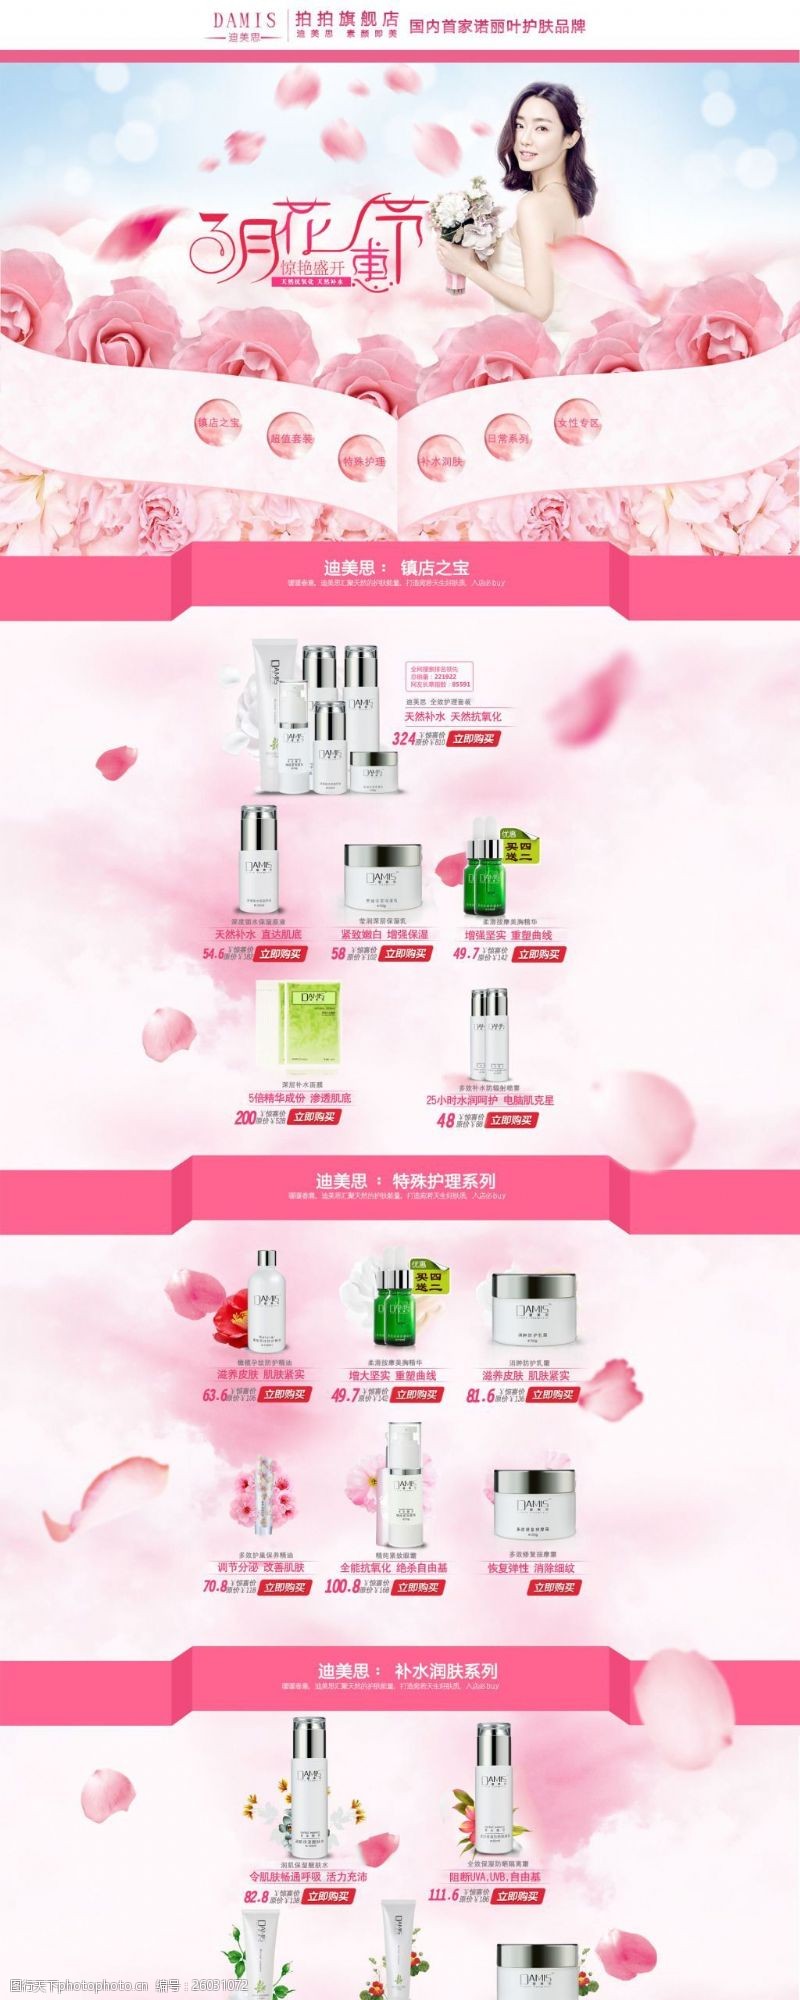 玫瑰精华天猫化妆品3月专题设计模板PSD素材